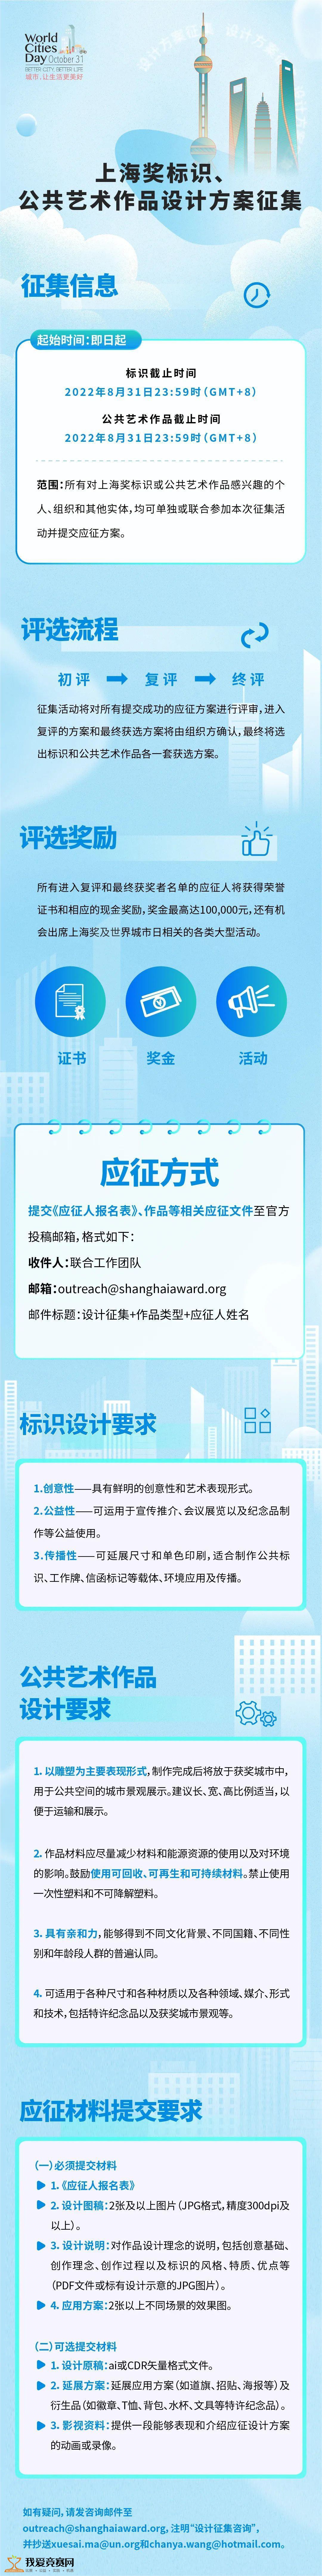 第十届“赢在南京”青年大学生创业大赛 - 创业大赛 我爱竞赛网